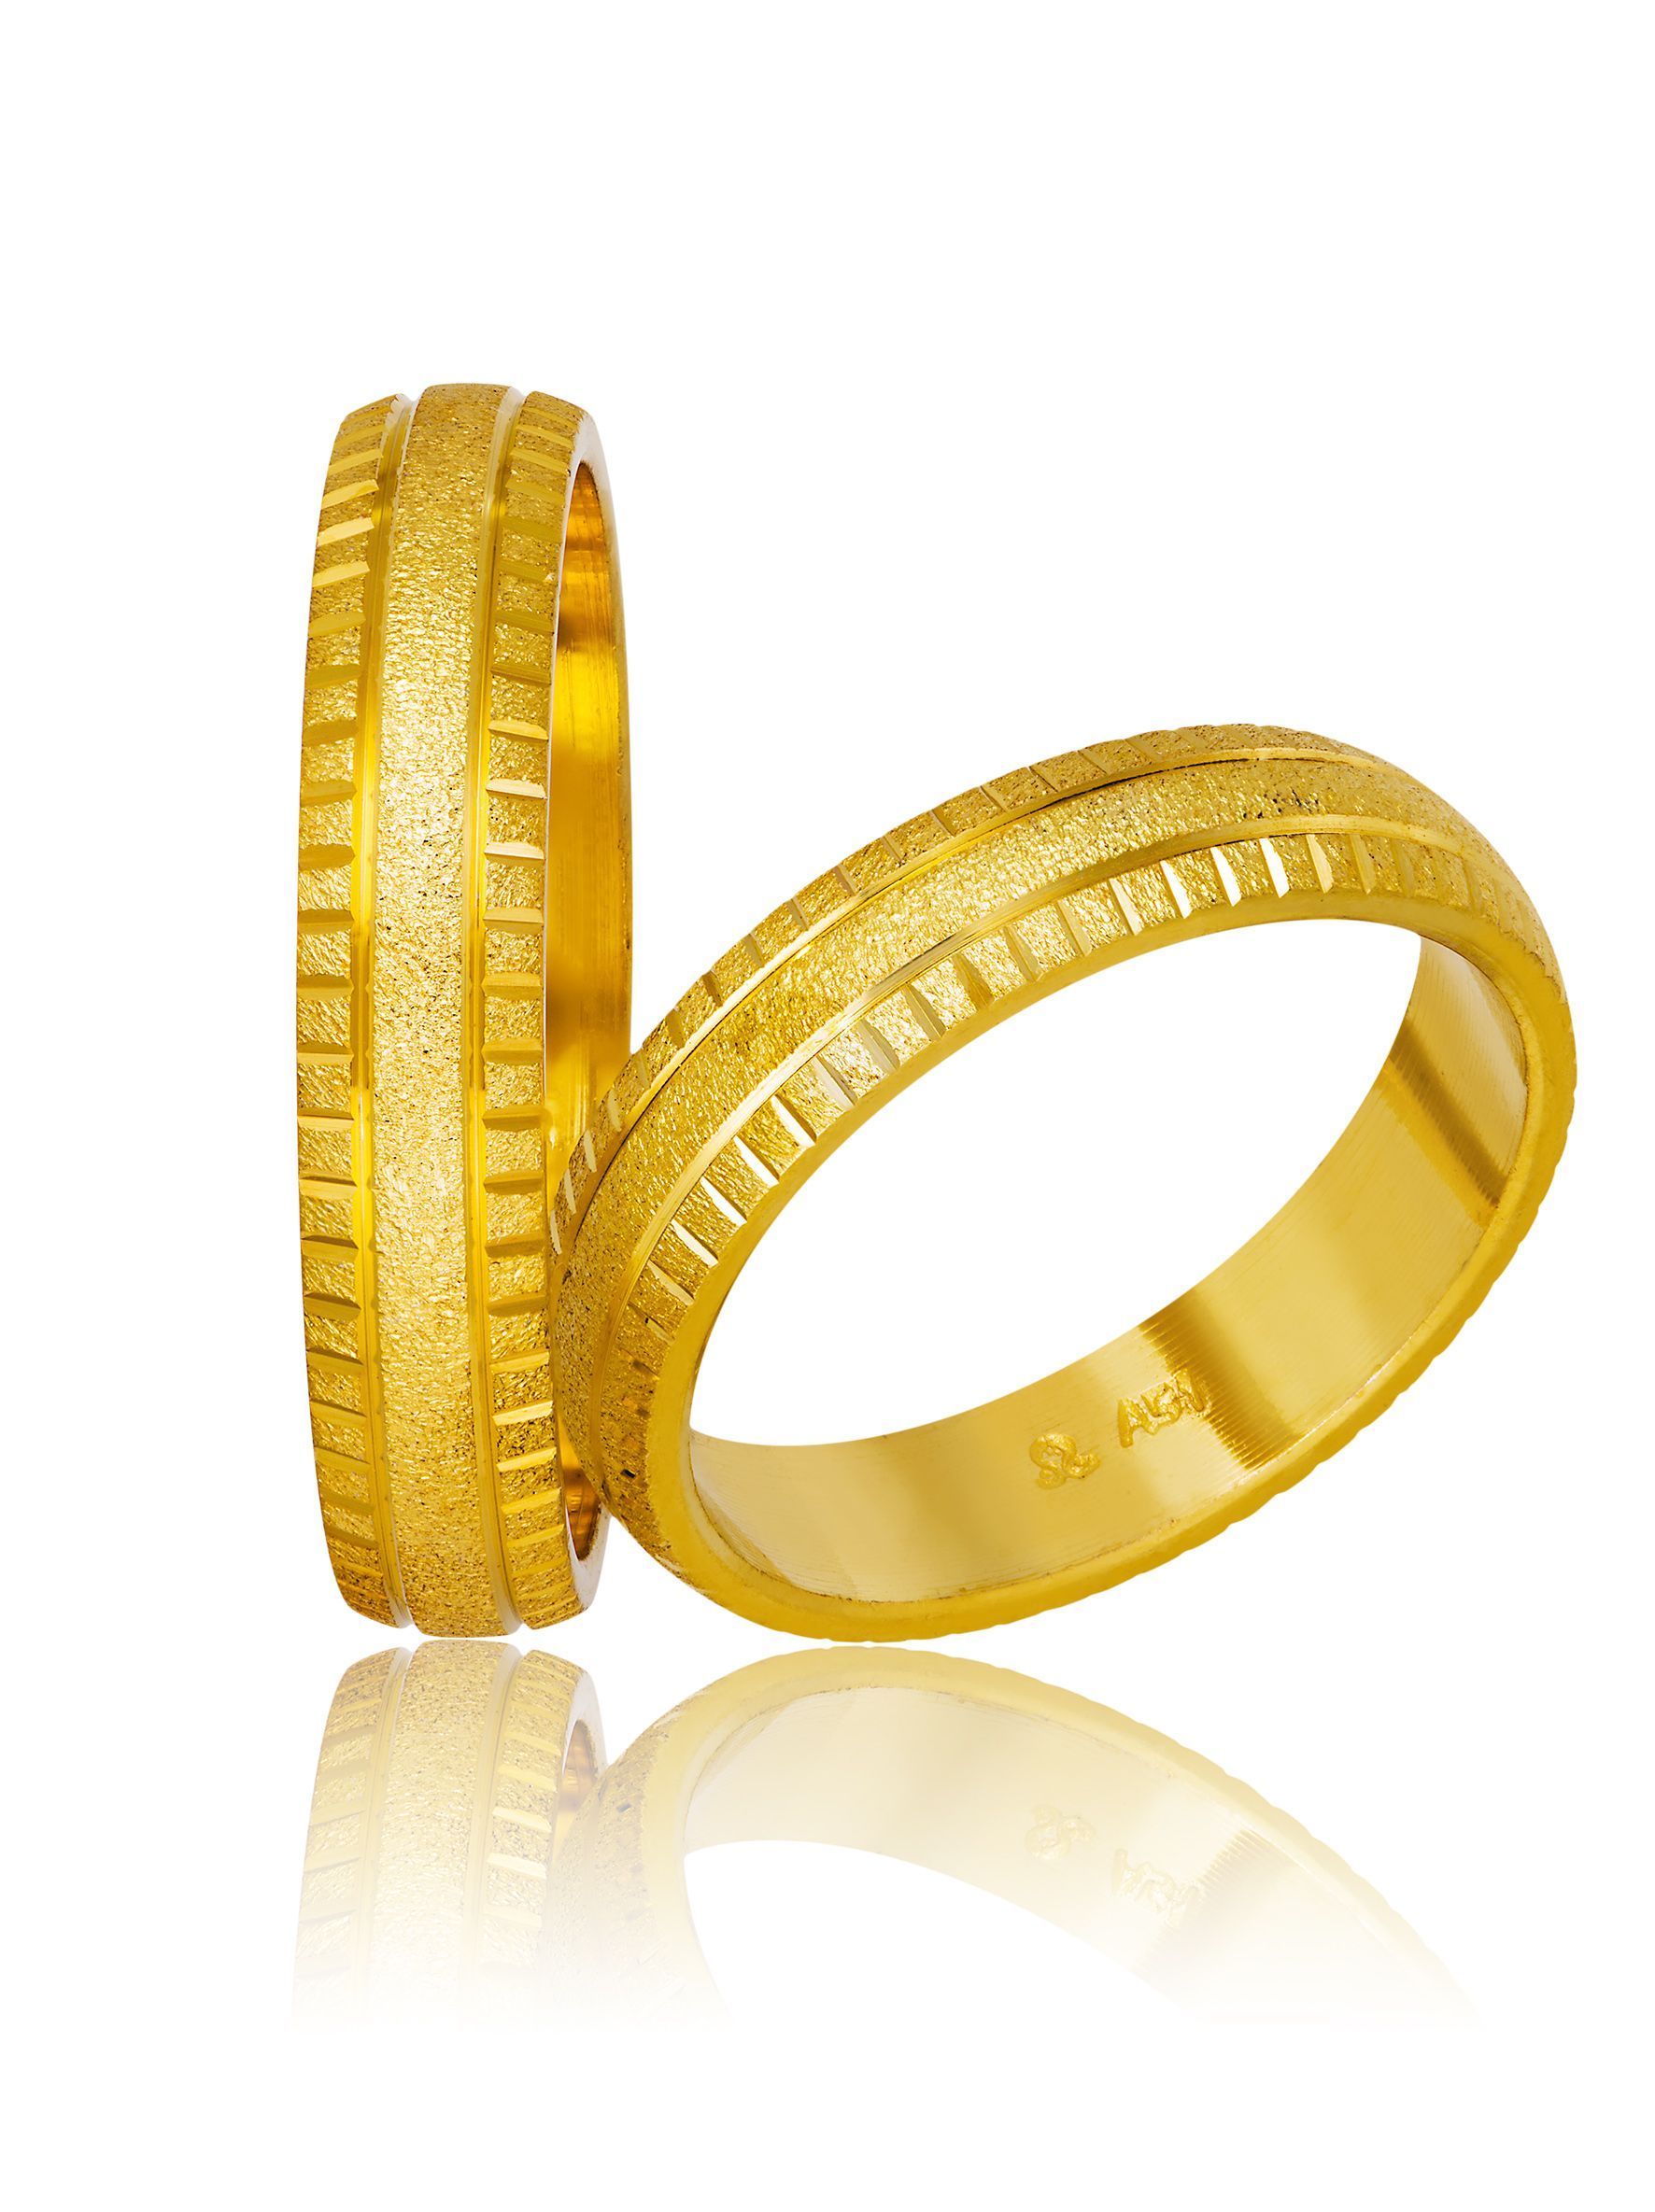 Golden wedding rings 4.5mm (code 756)